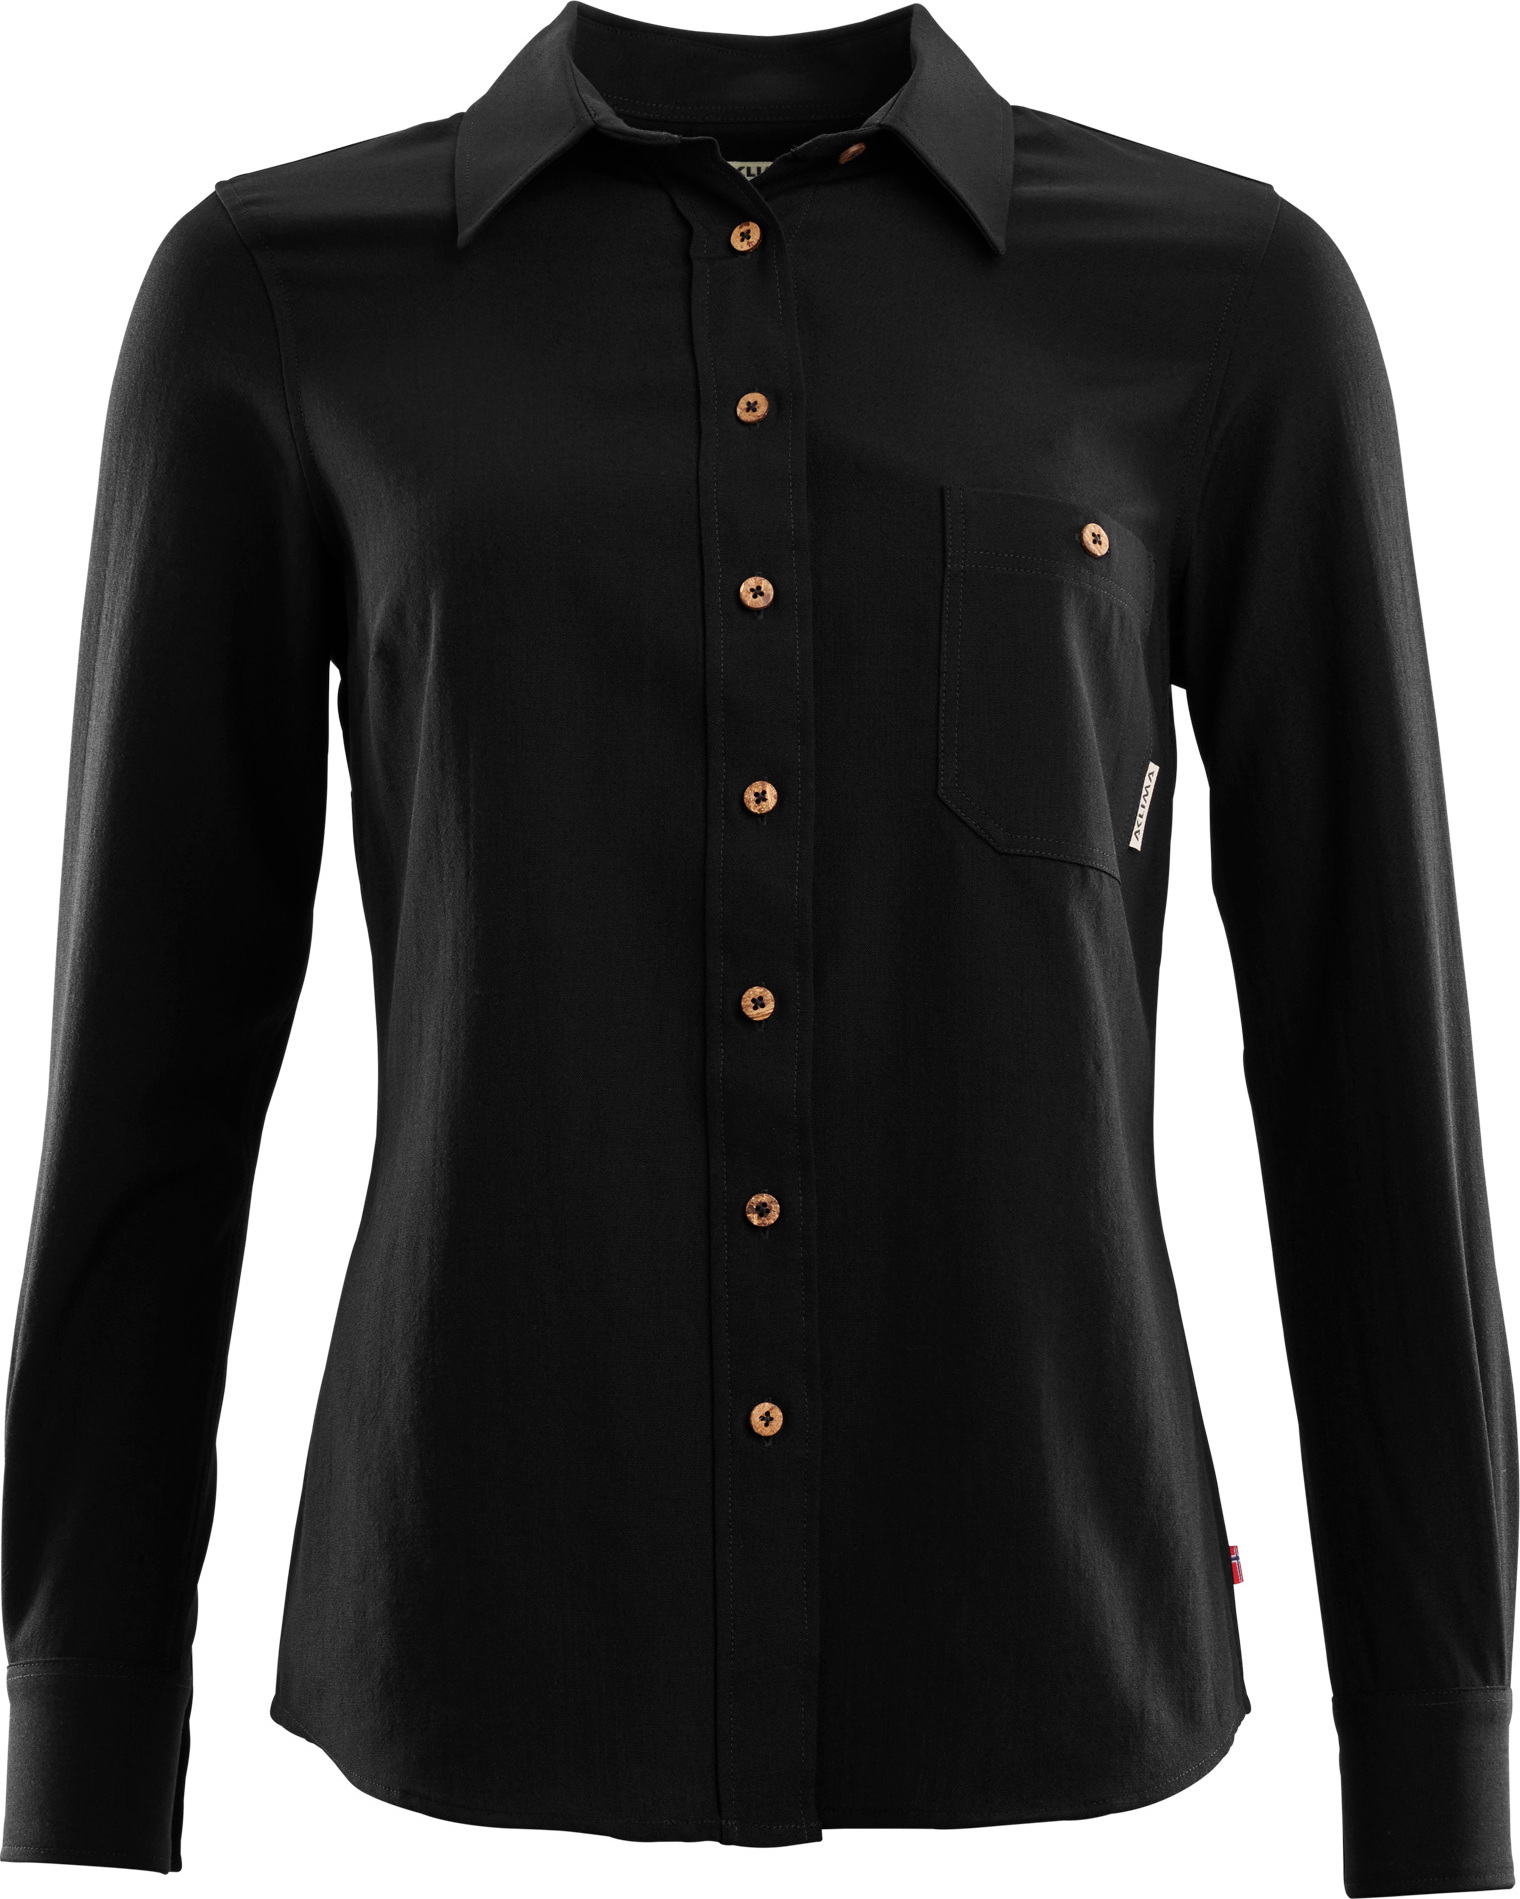 LeisureWool Woven Wool Shirt Woman Jet Black